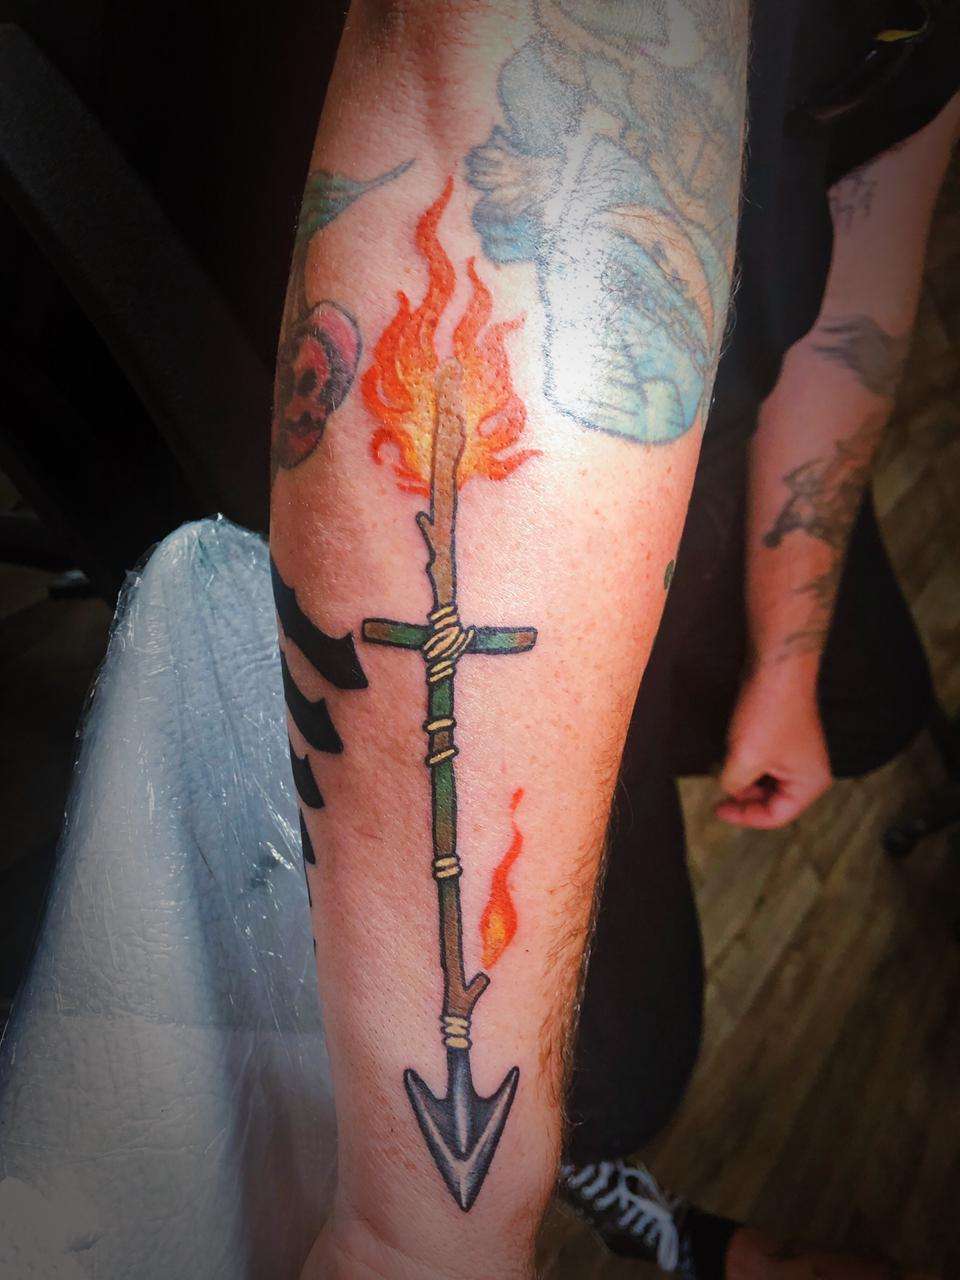 Tatuaje de flecha y cruz de fuego